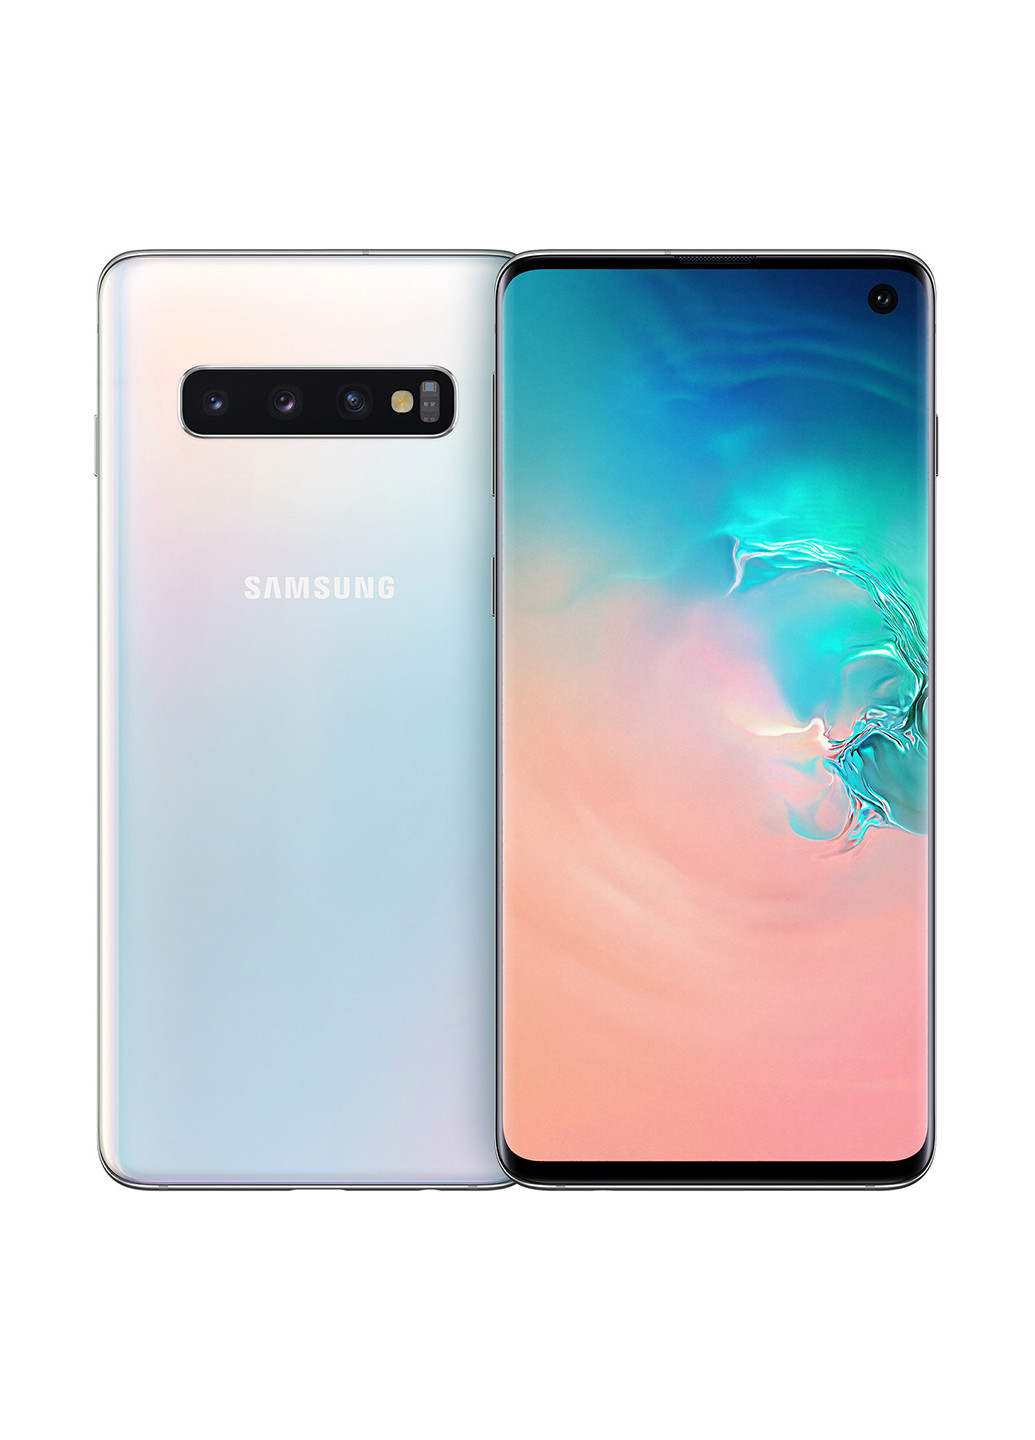 Смартфон Galaxy S10 8 / 128GB White (SM-G973FZWDSEK) Samsung galaxy s10 8/128gb white (sm-g973fzwdsek) (164659519)